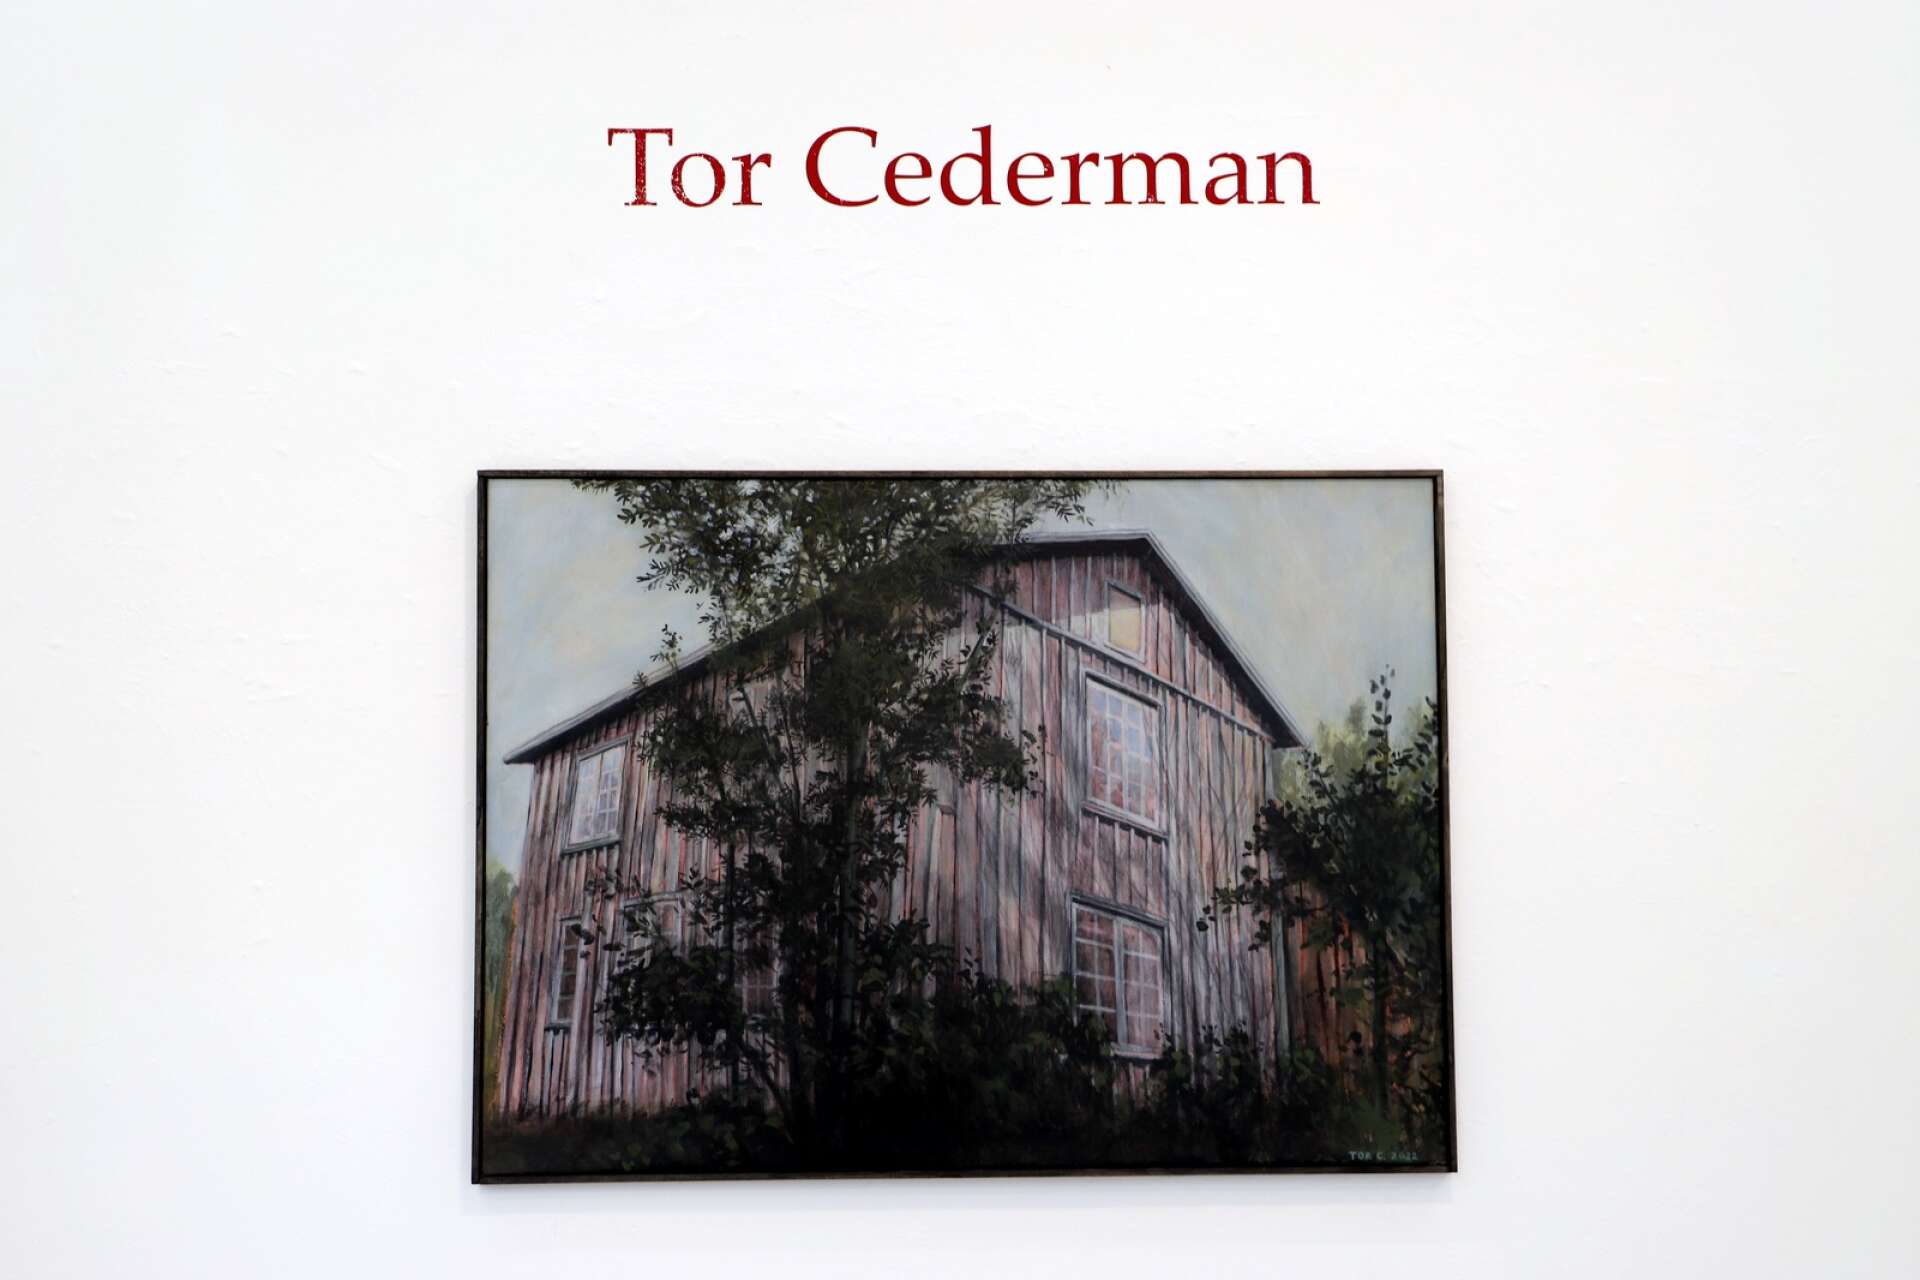 Gottlandsviken revisited. Huvudbyggnaden revs på 80-talet. ”Det var ett ruckel till sist”, säger Tor Cederman, men i hans bild är det fortfarande vackert.